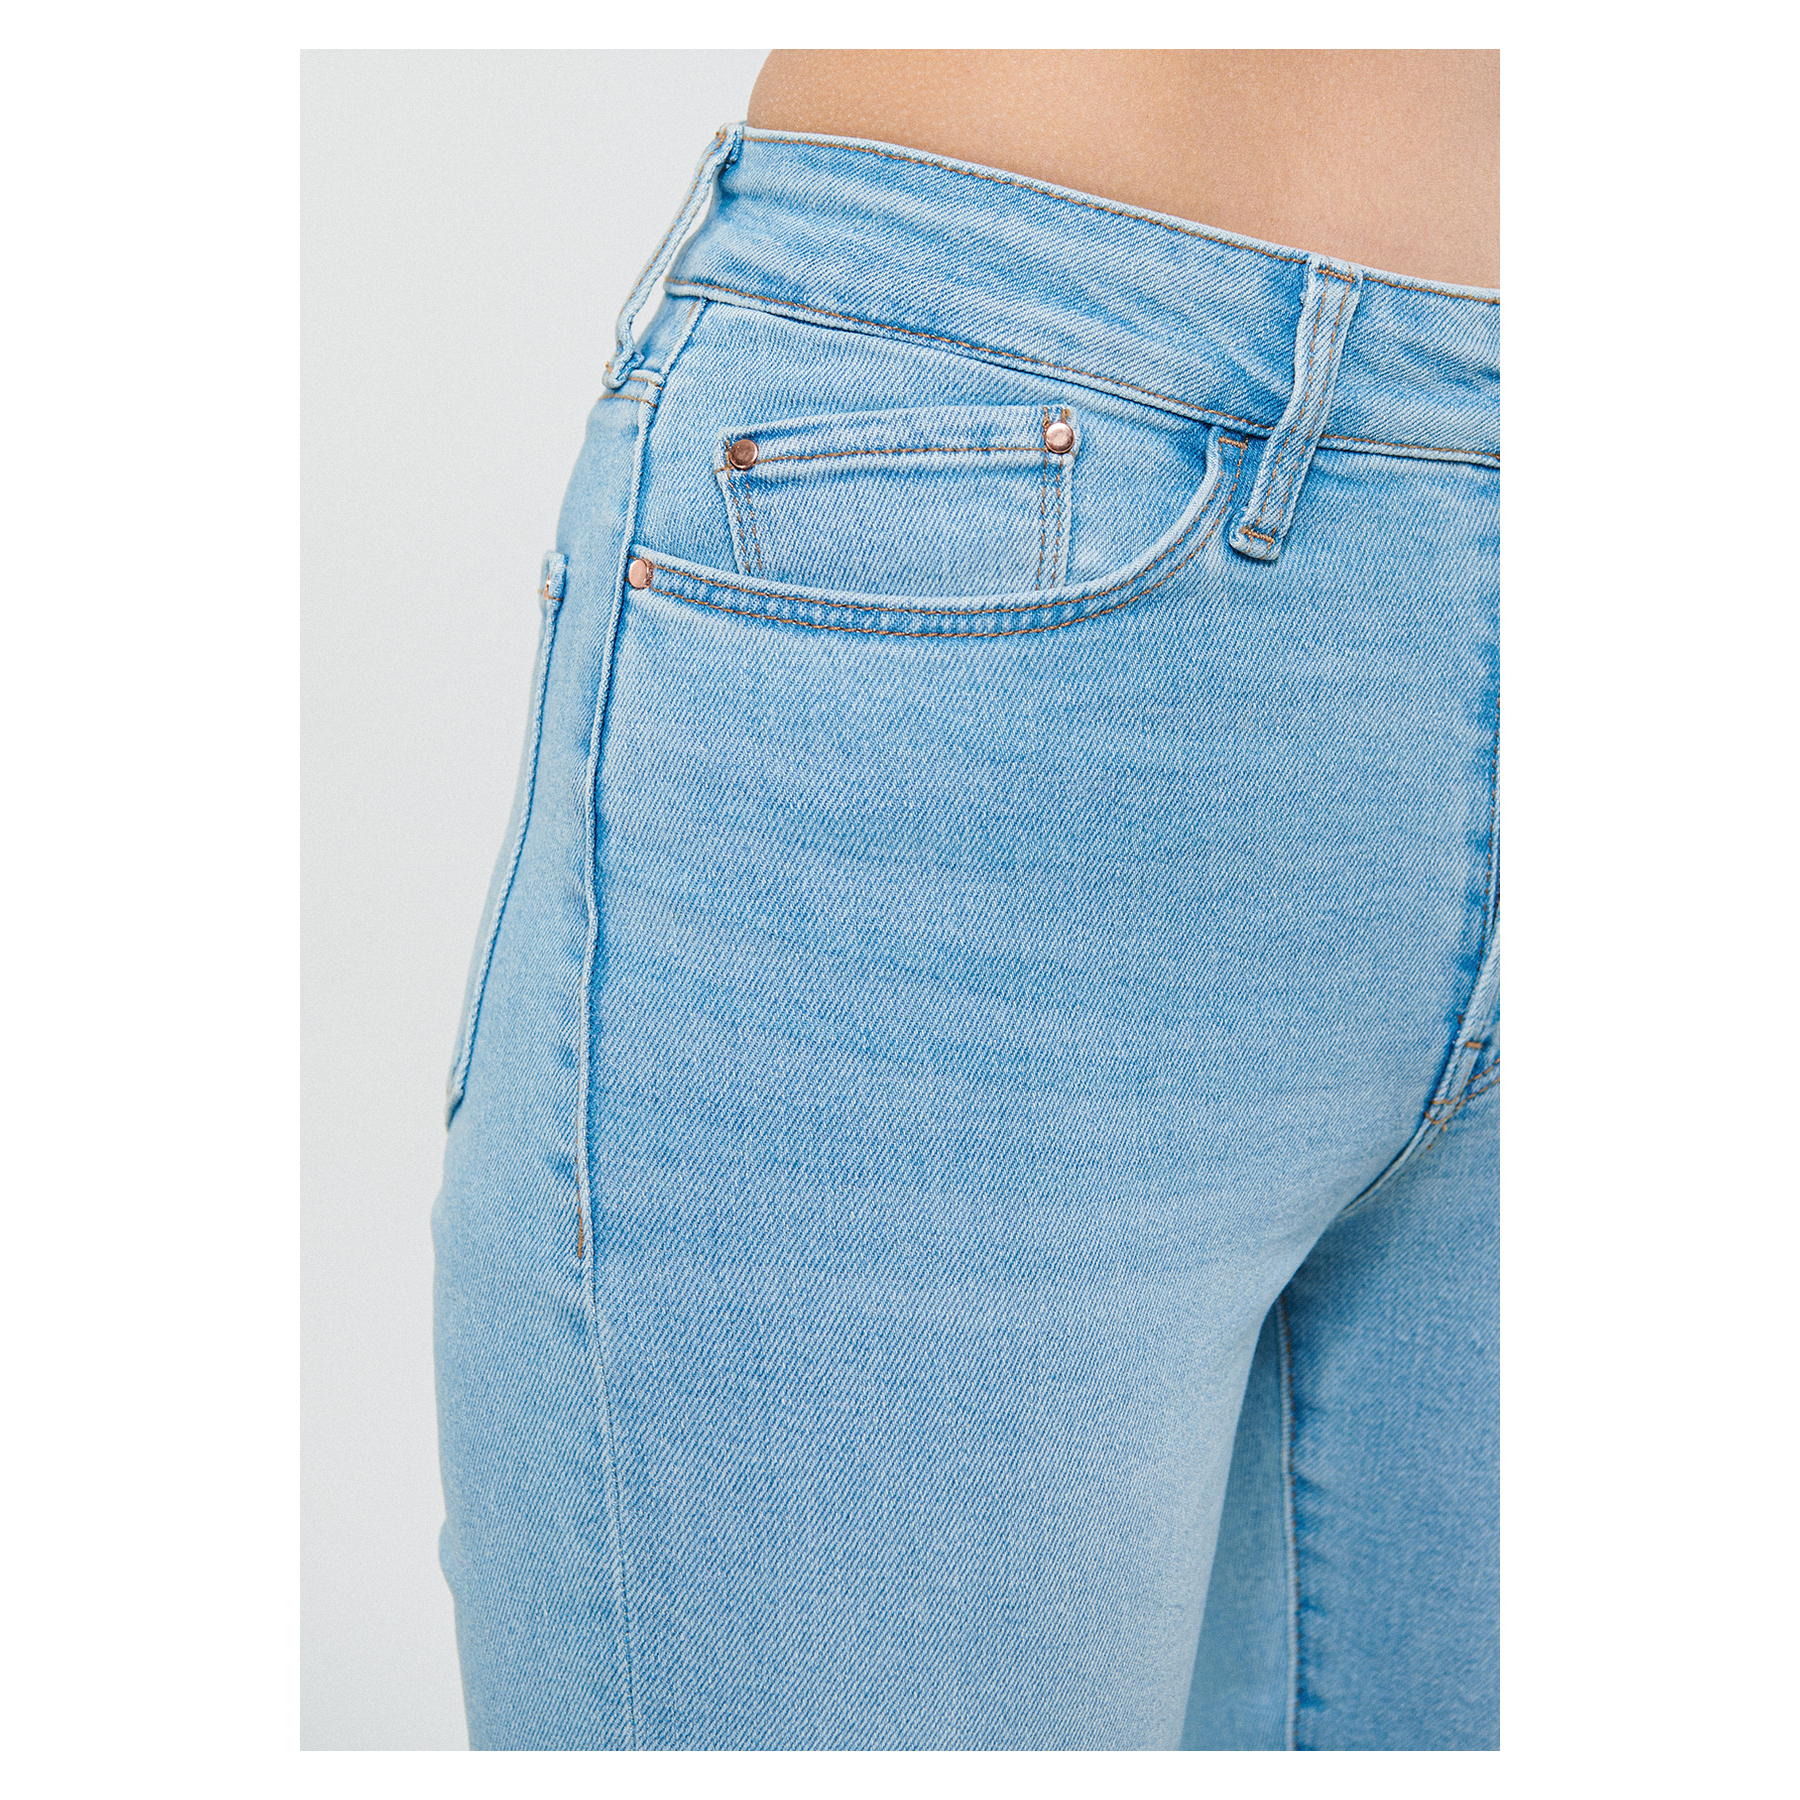 Mavi Jeans Star Shaded Gold Shape Mavi Kot Pantolon (101077-84432)